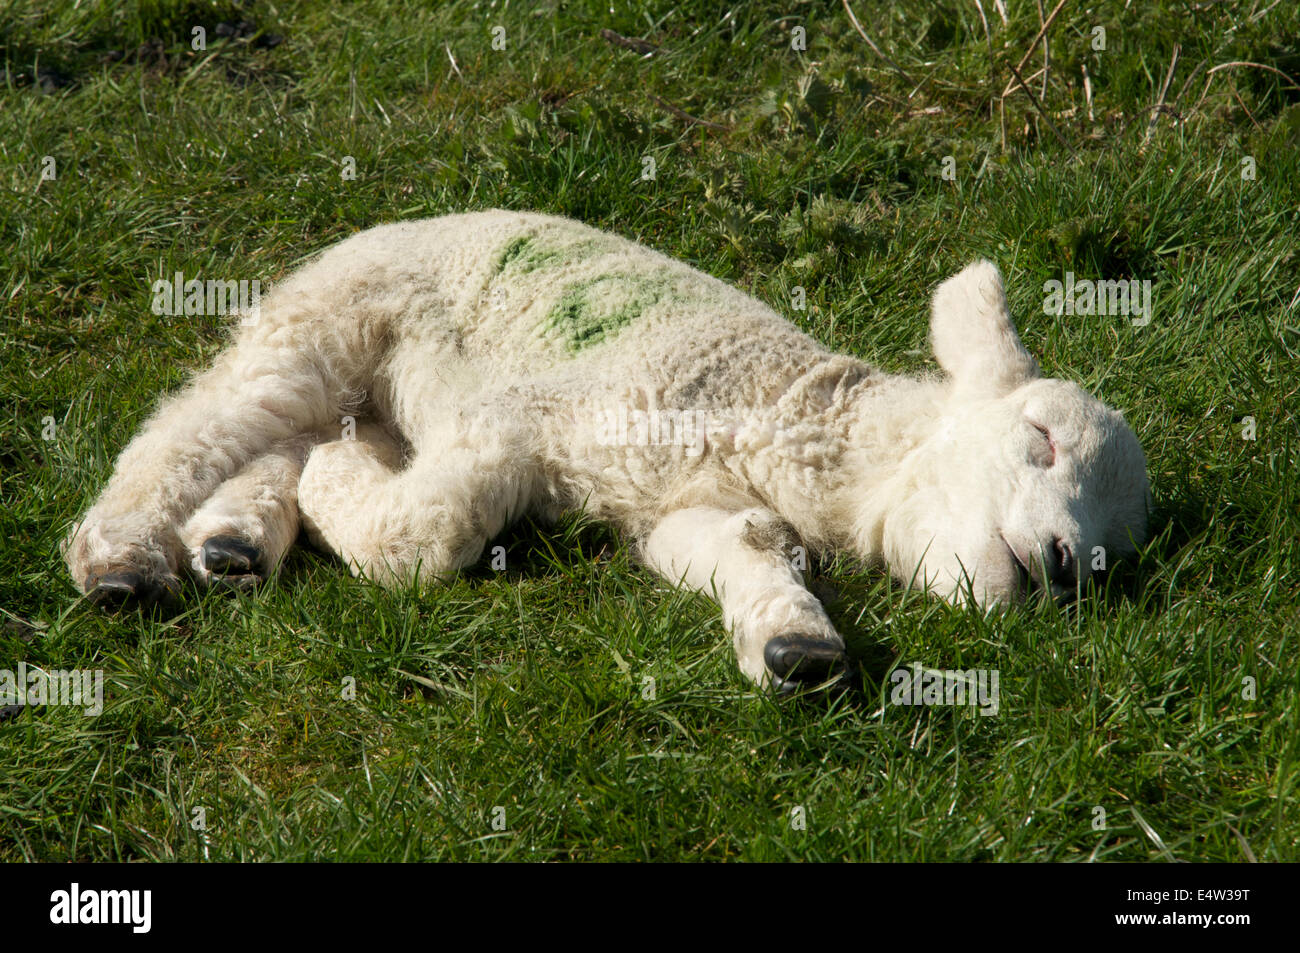 Photographie d'un agneau de printemps, abandonnées sur le sol un sommeil Banque D'Images